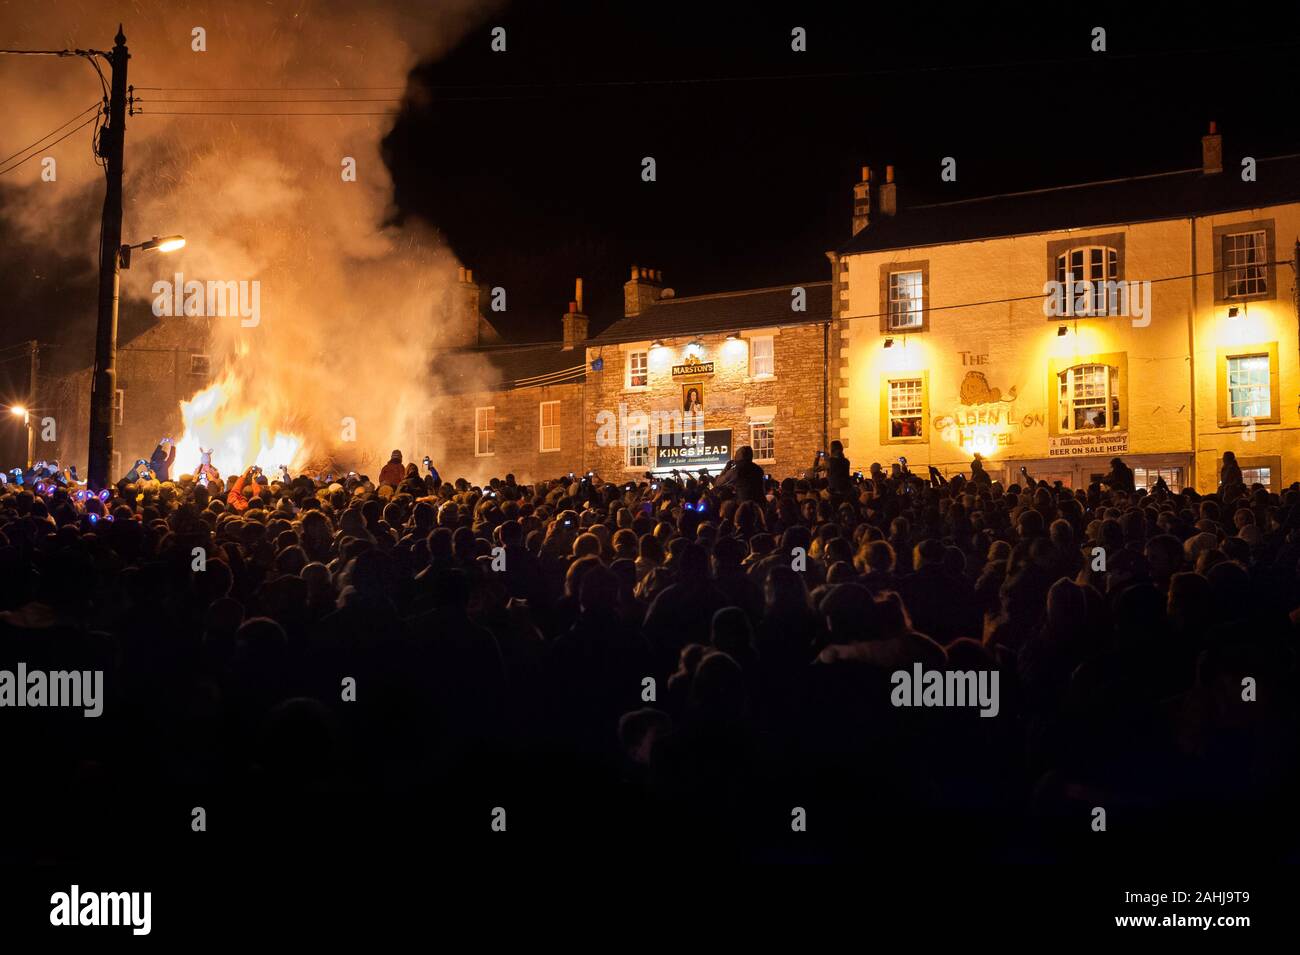 Massen am Lagerfeuer feiern ins Neue Jahr in Allendale Silvester Tar Bar'l Zeremonie, an der brennenden Teer Fässer befördert werden und auf dem Feuer geworfen. Stockfoto